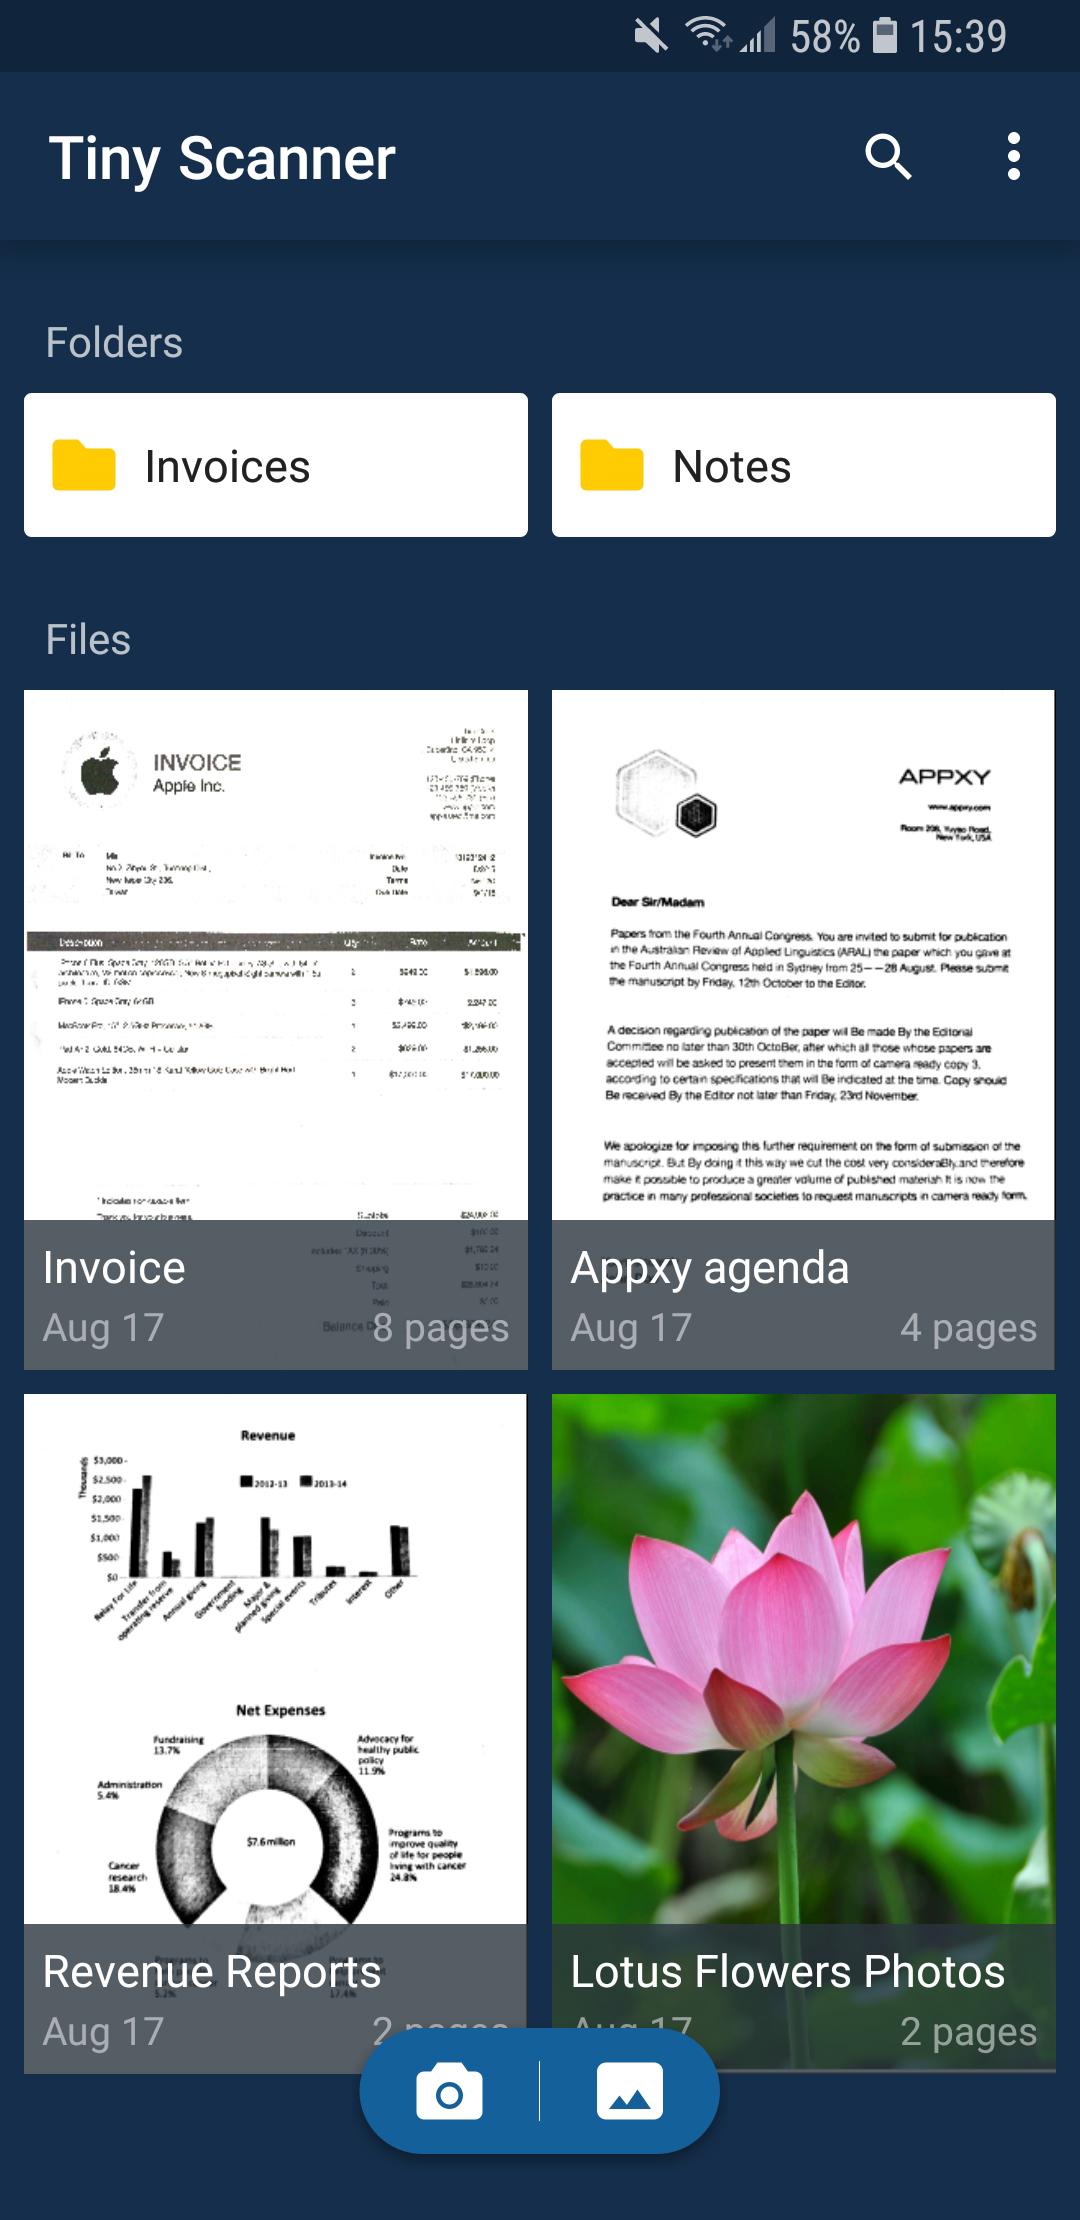 Tiny Scanner - PDF Scanner App